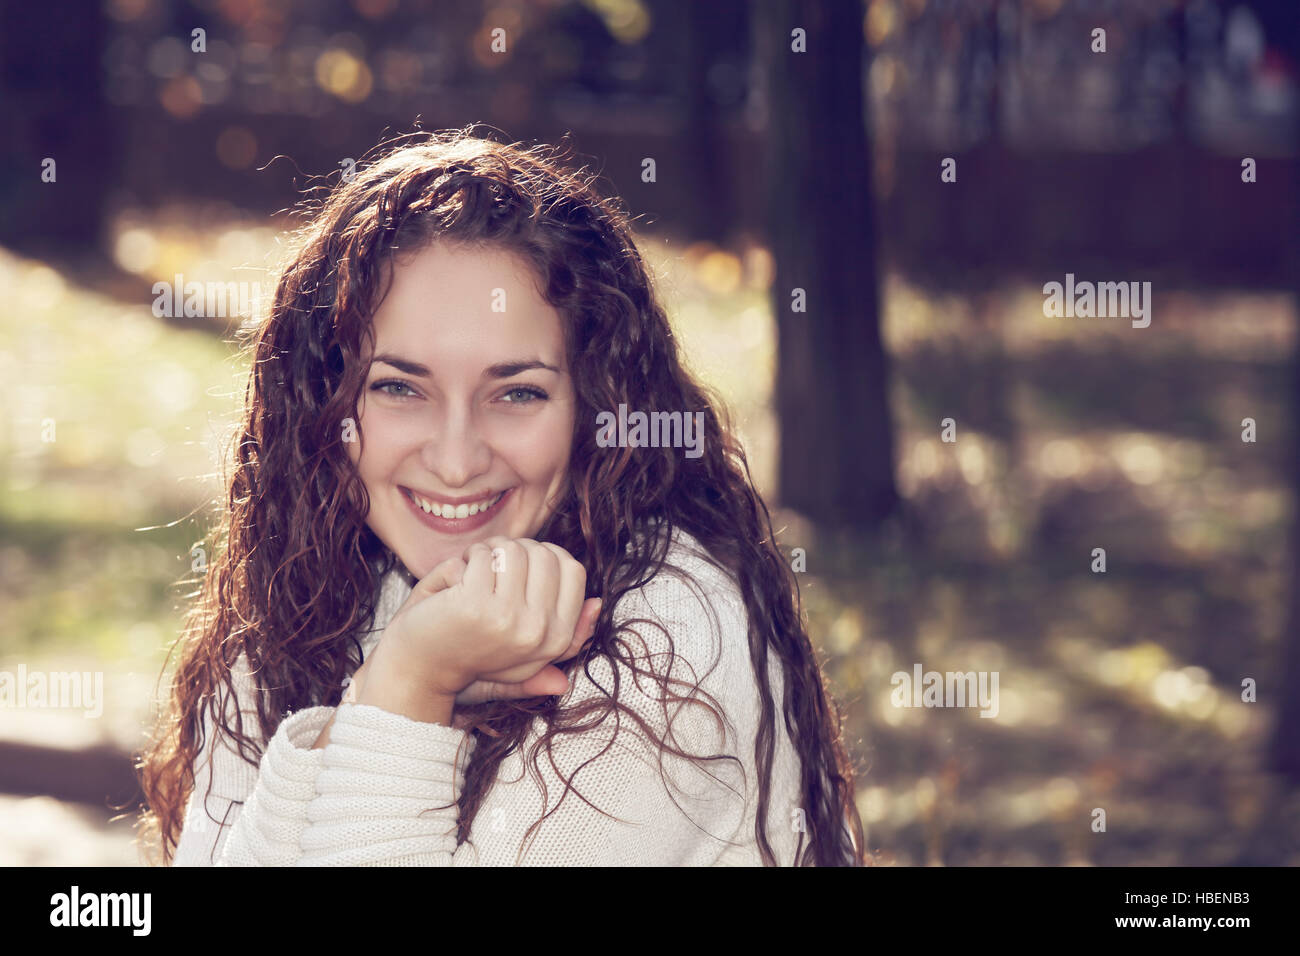 Portrait of happy woman Stock Photo